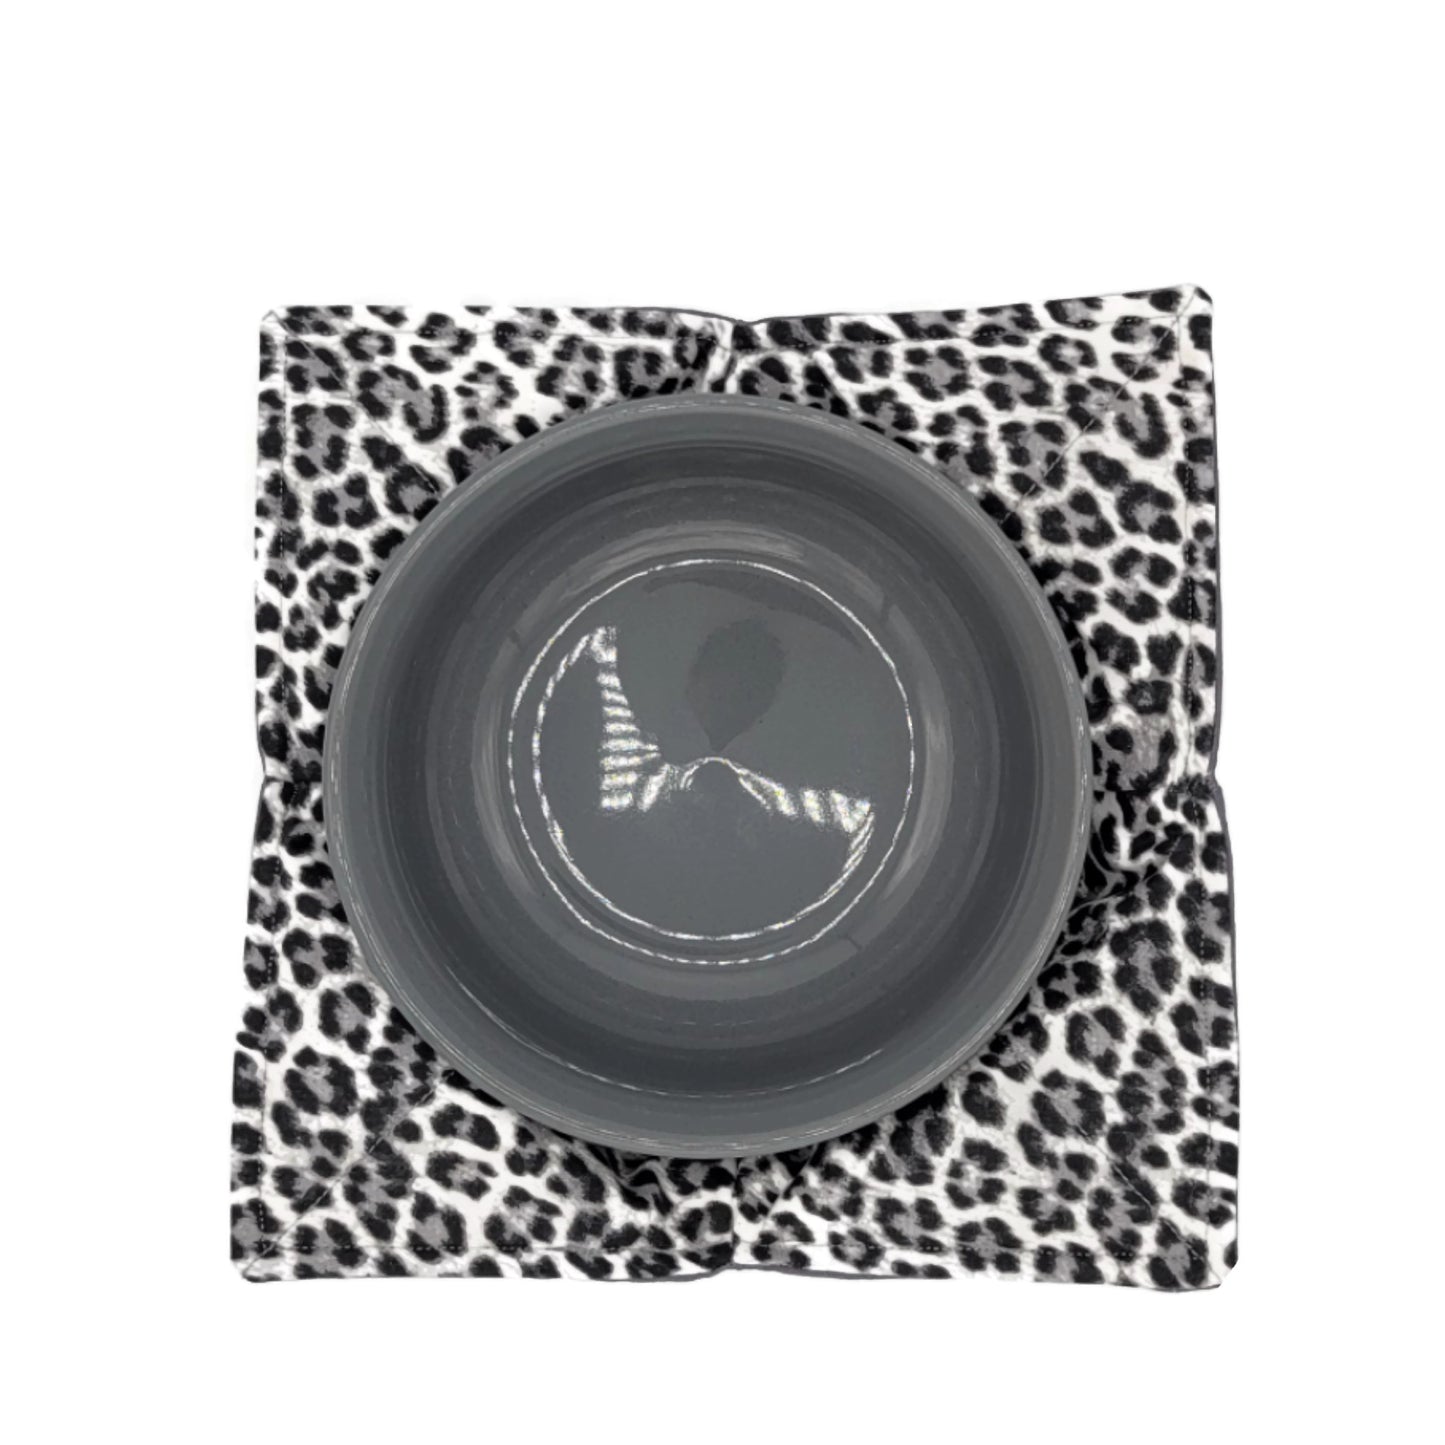 Reversible Bowl Cozy - Black/White/Grey Cheetah